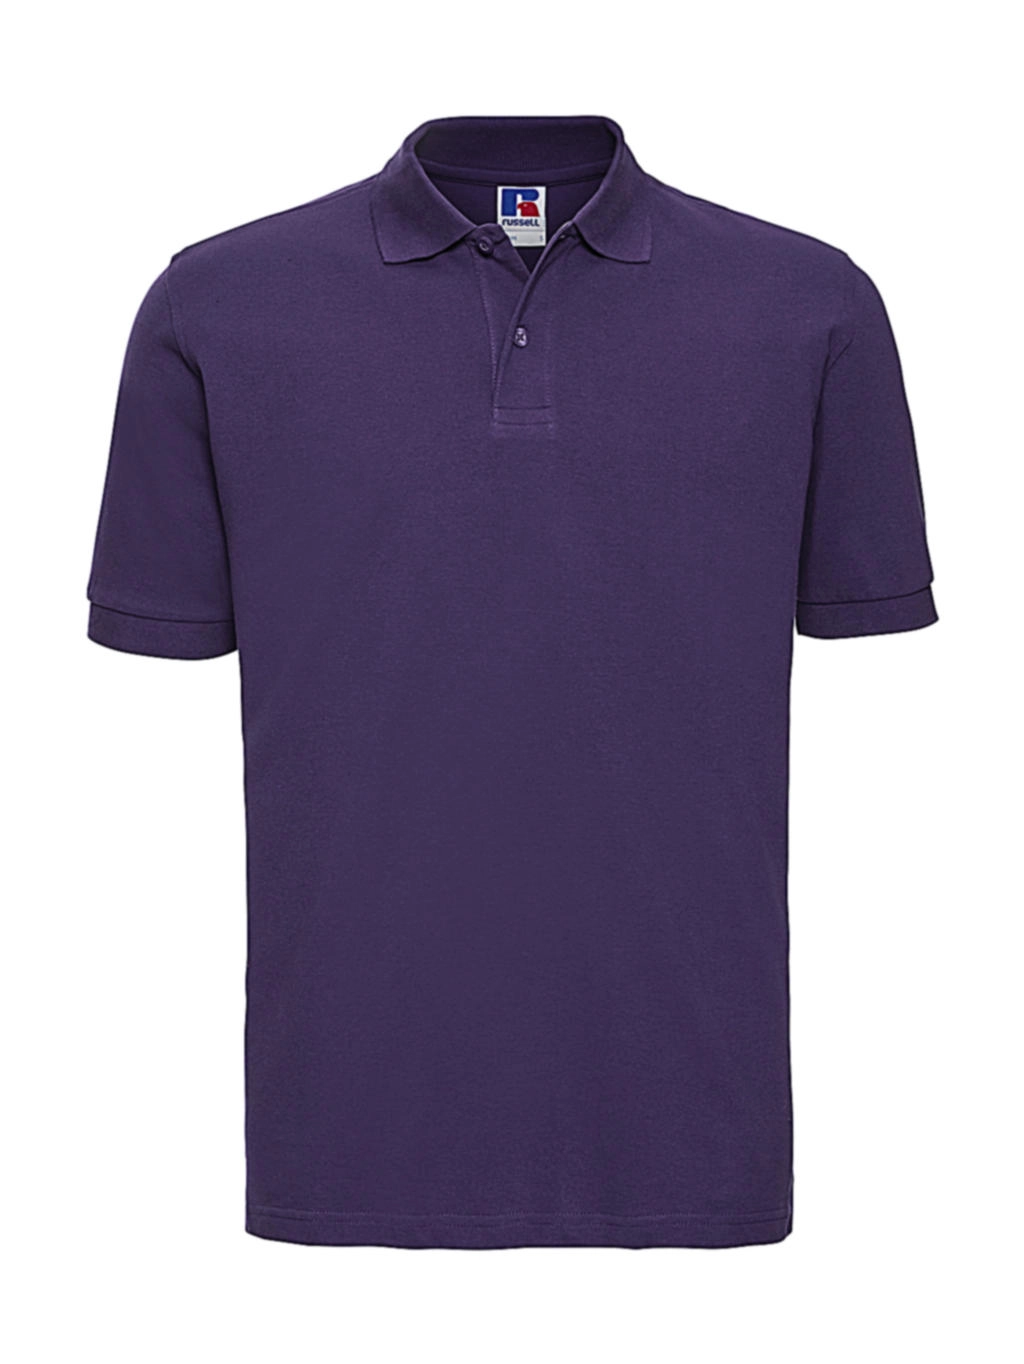 Men`s Classic Cotton Polo zum Besticken und Bedrucken in der Farbe Purple mit Ihren Logo, Schriftzug oder Motiv.